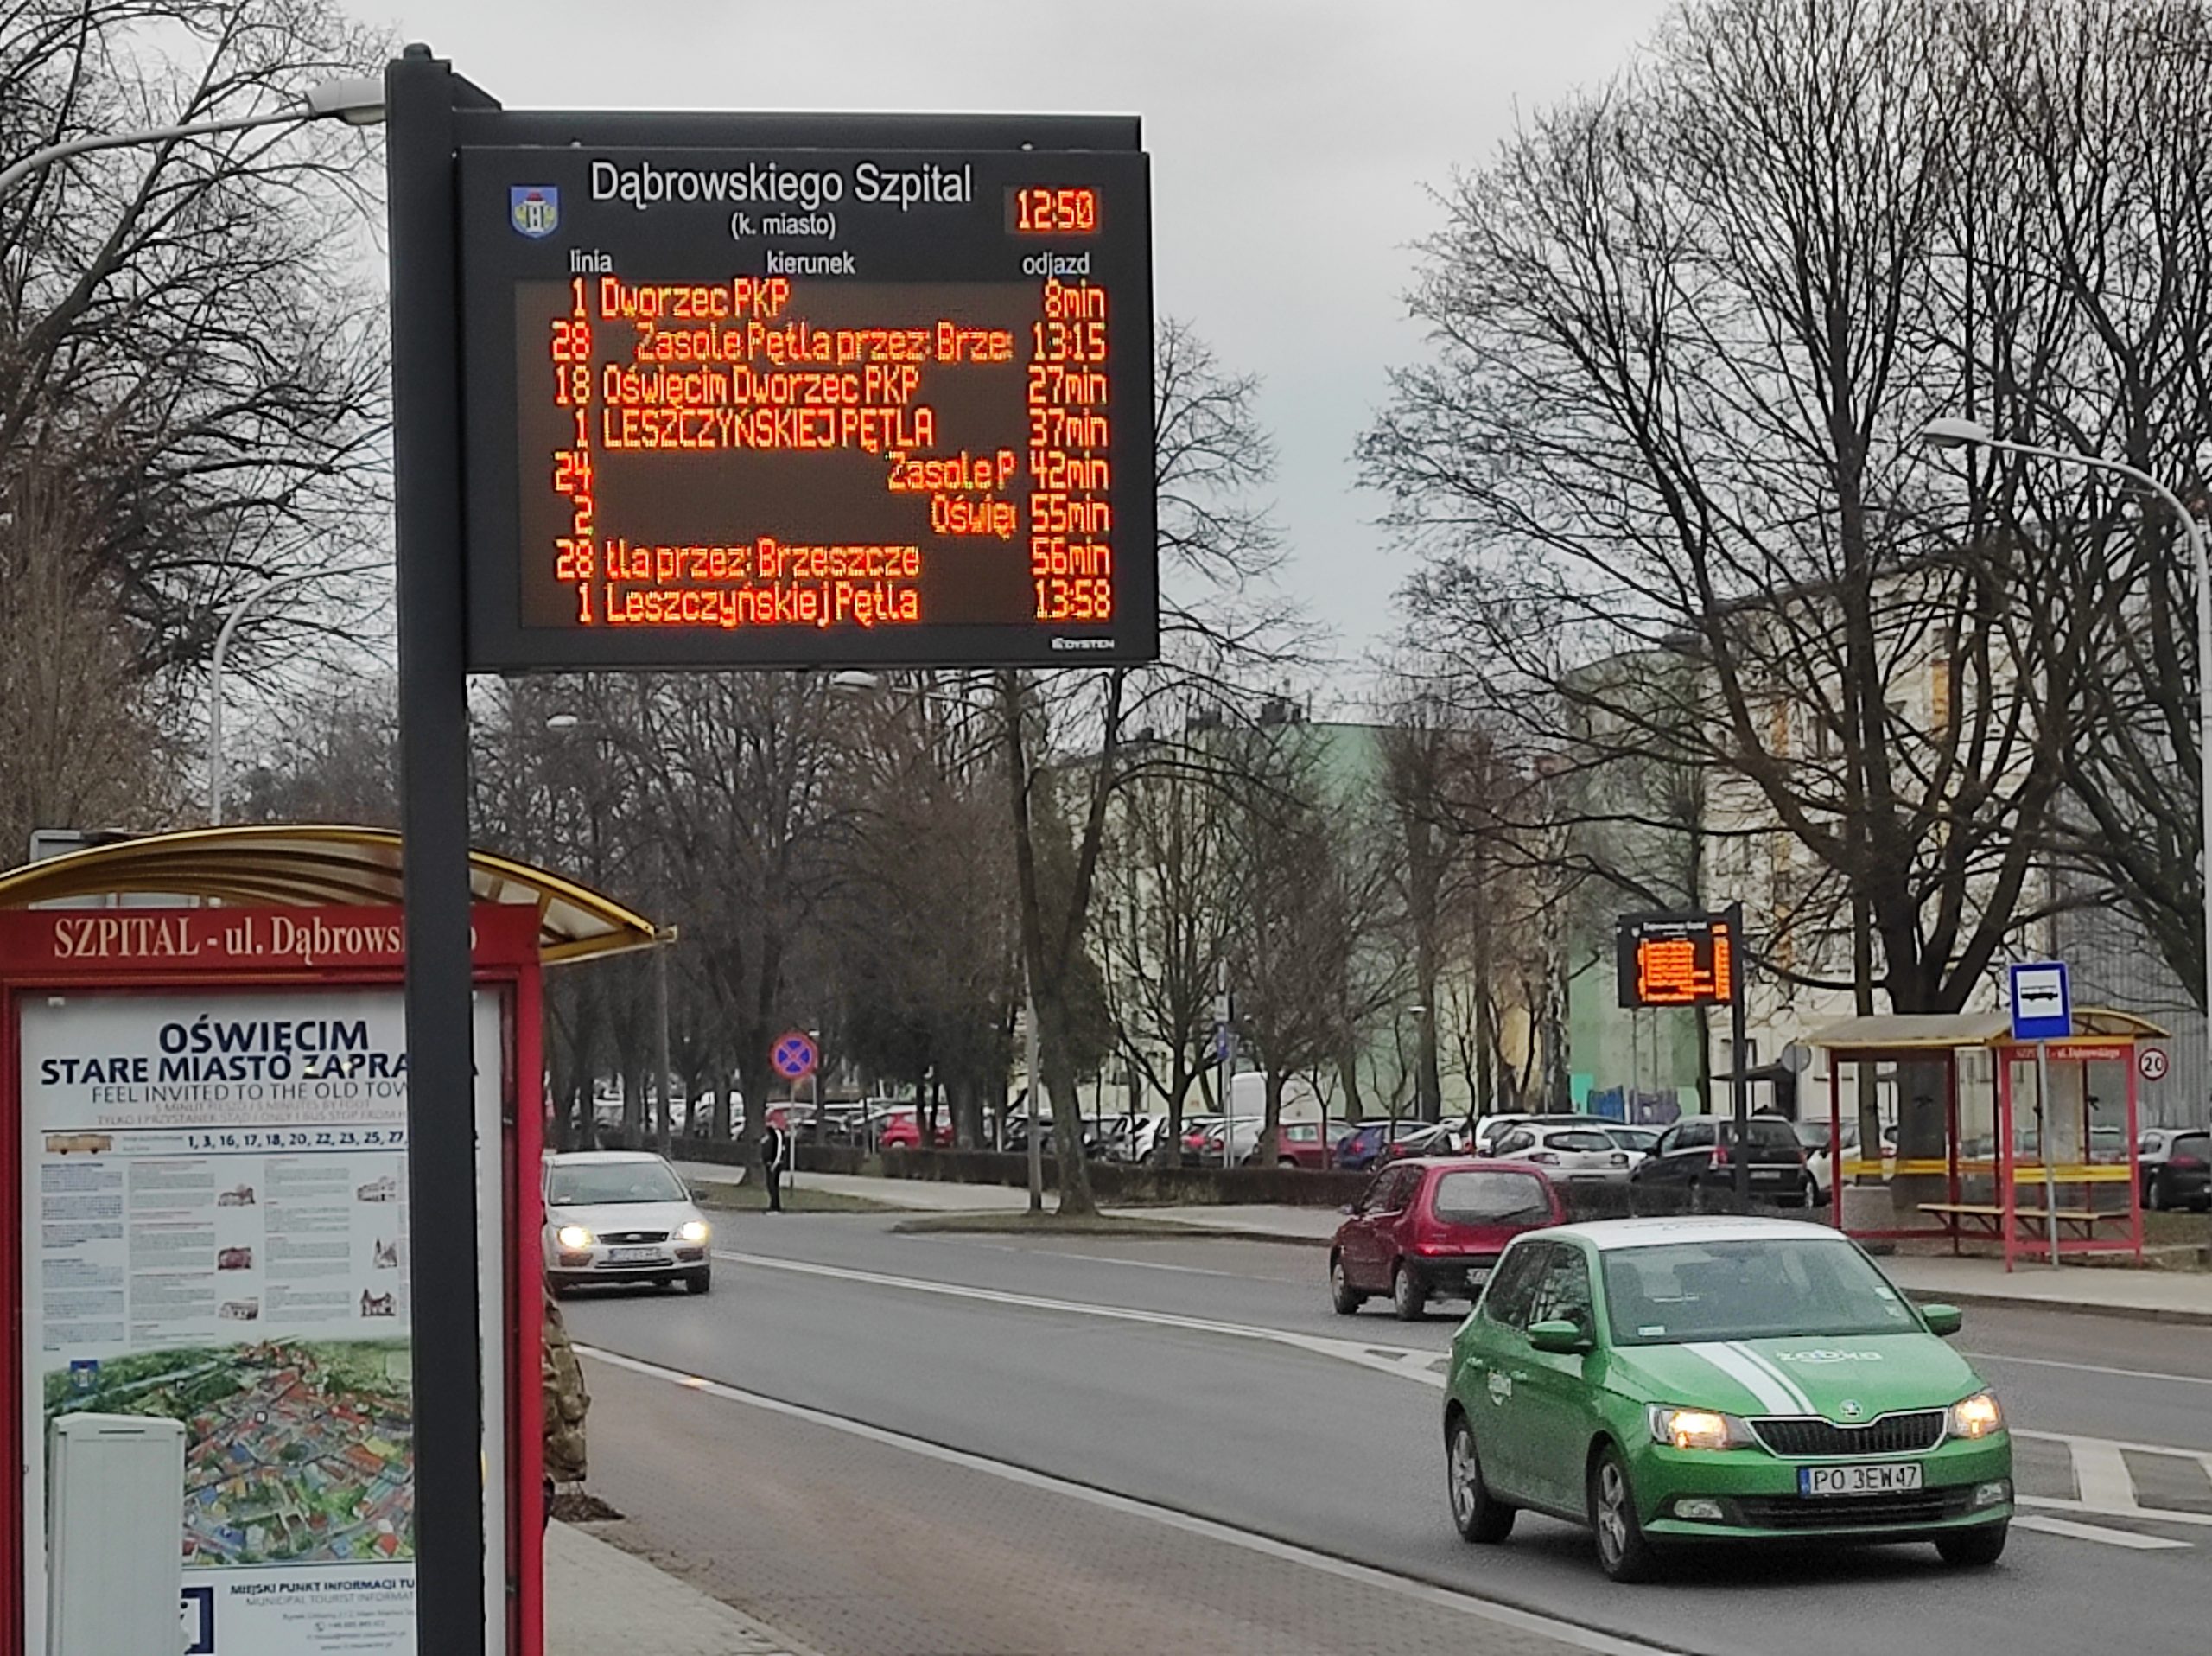 MZK Oświęcim. Ledowe ekrany wyświetlają informacje dla pasażerów komunikacji miejskiej